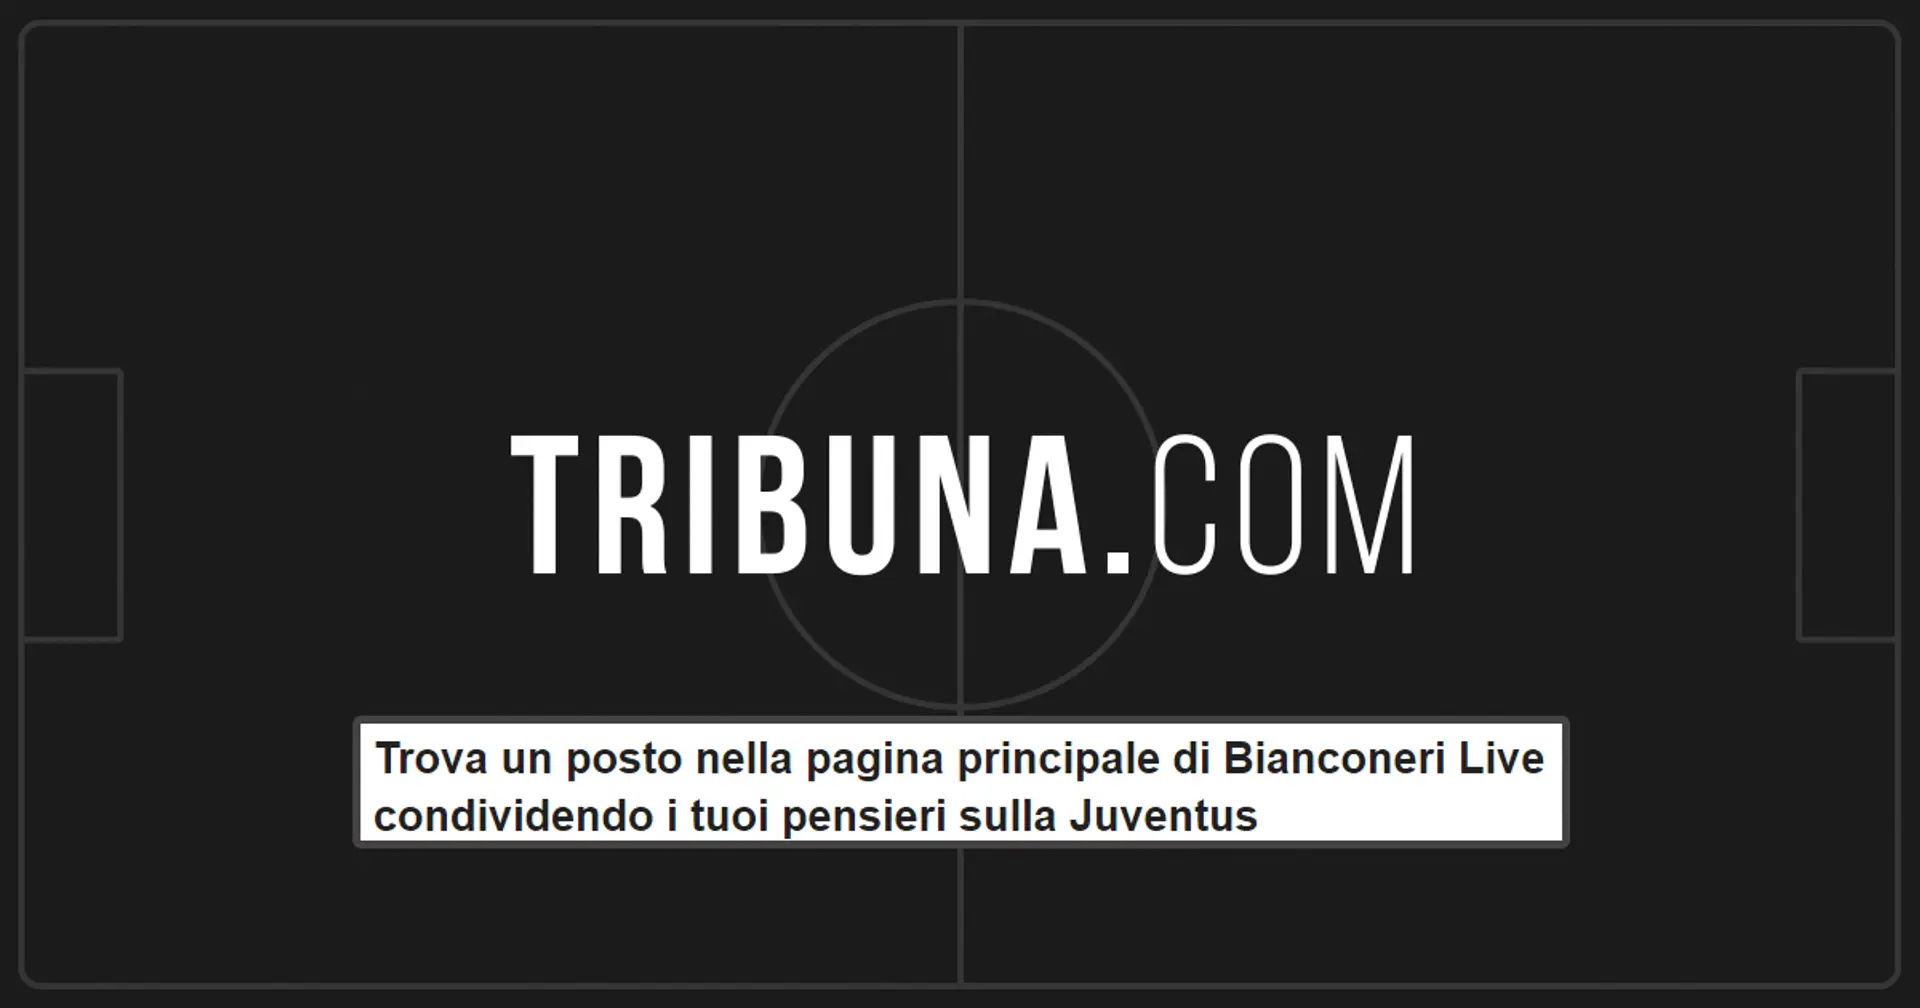 ✍️Trova un posto nella pagina principale di Bianconeri Live condividendo i tuoi pensieri sulla Juventus